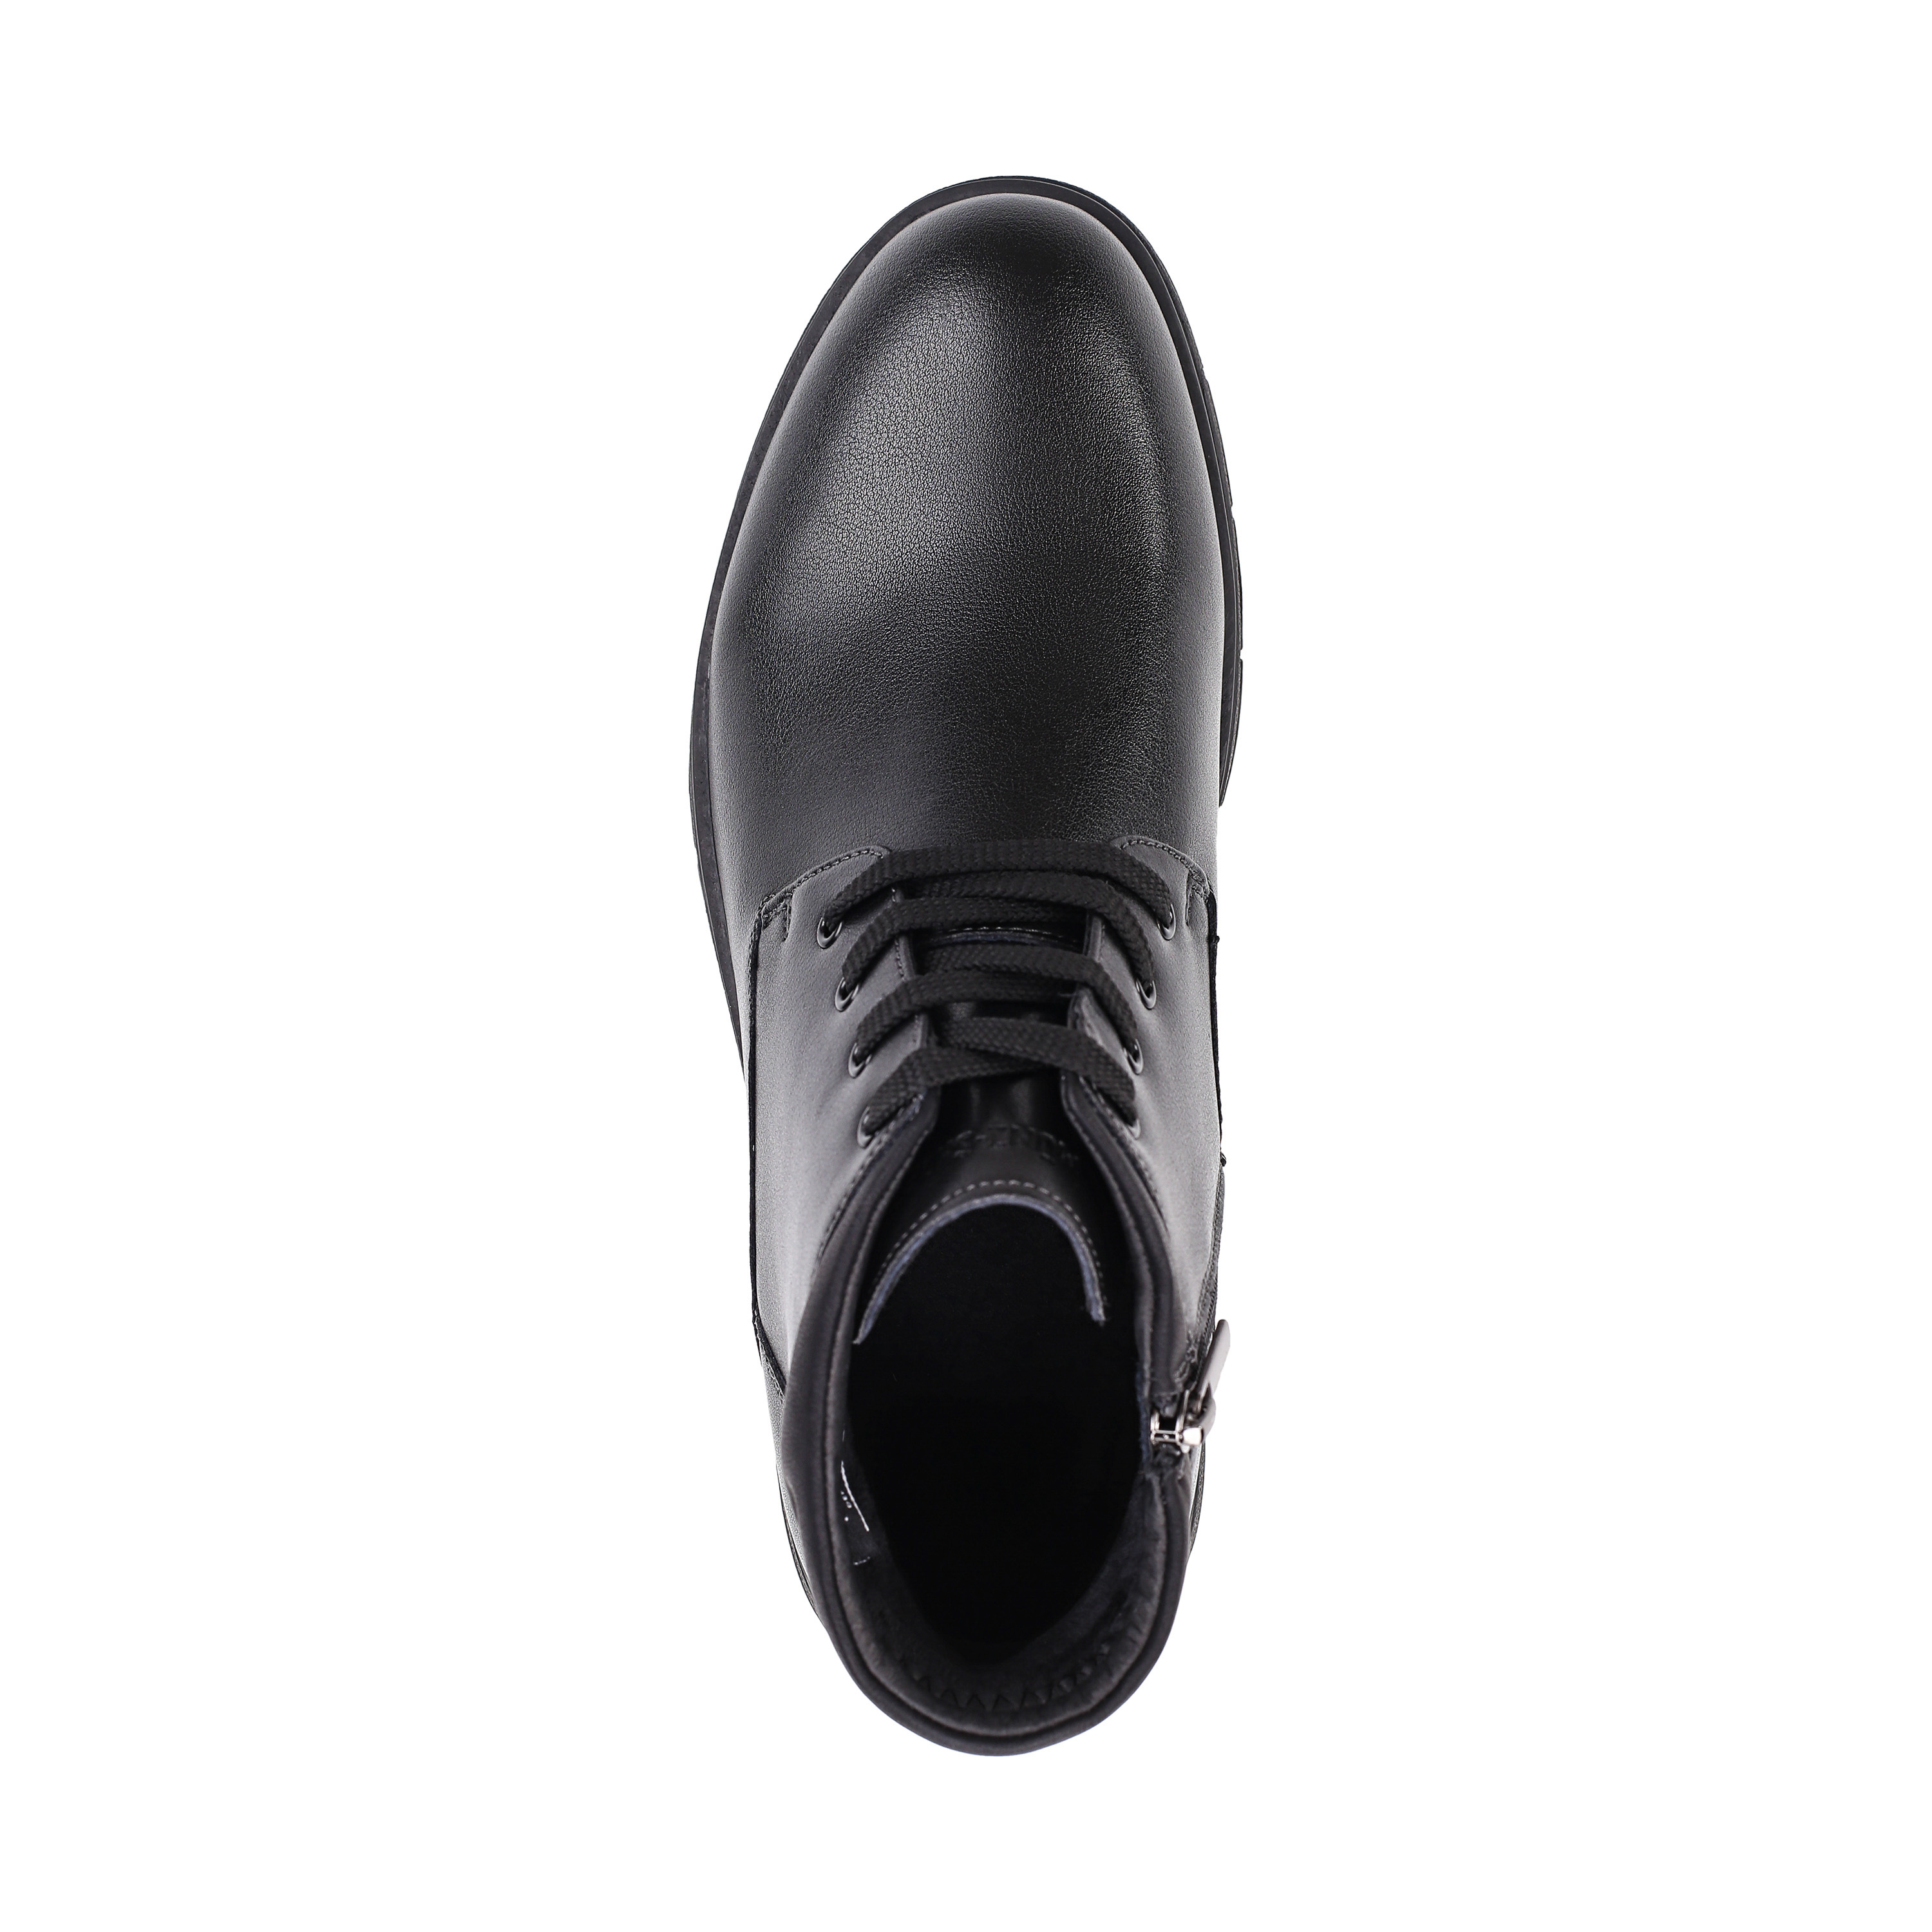 Ботинки MUNZ Shoes 098-126A-2602 098-126A-2602, цвет черный, размер 42 дерби - фото 5